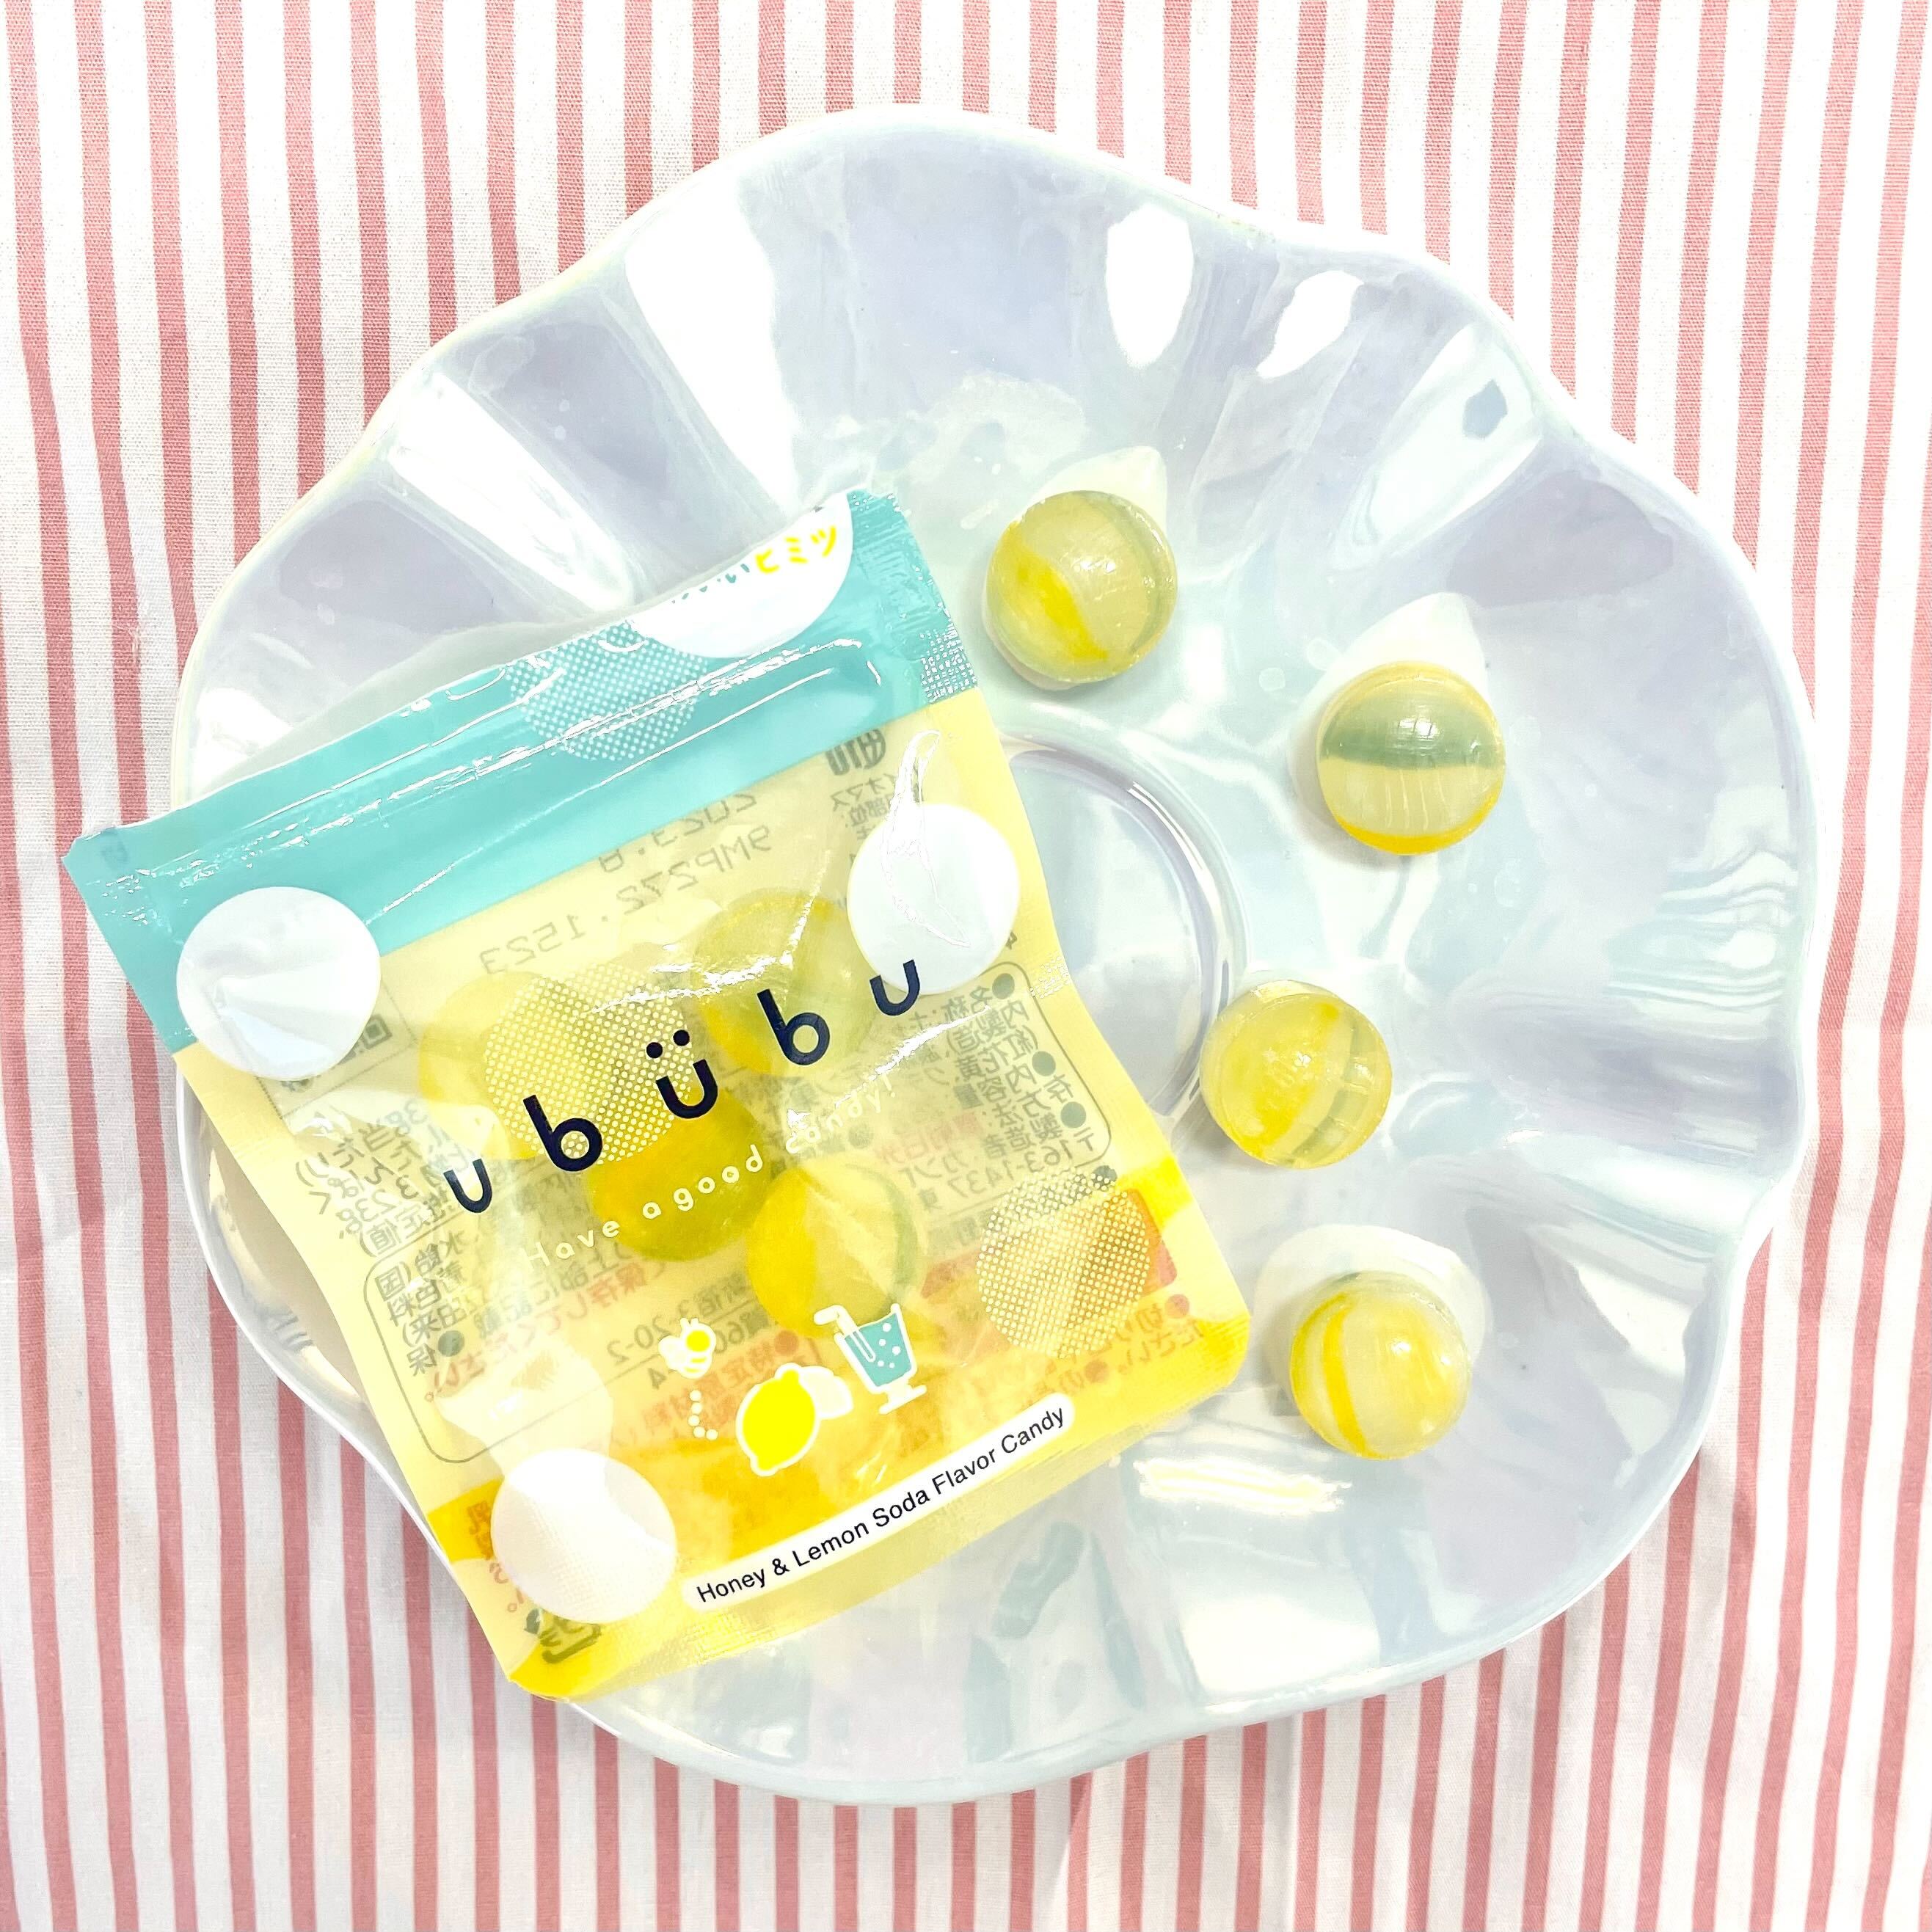 【編集部食レポ📝】パケ買いしたくなる見た目からかわいいキャンディ「ububu(うぶぶ) ハニーレモンソーダ味」ってどんな味😋🍋🍹💗？販売場所や映えるパケも徹底紹介✨